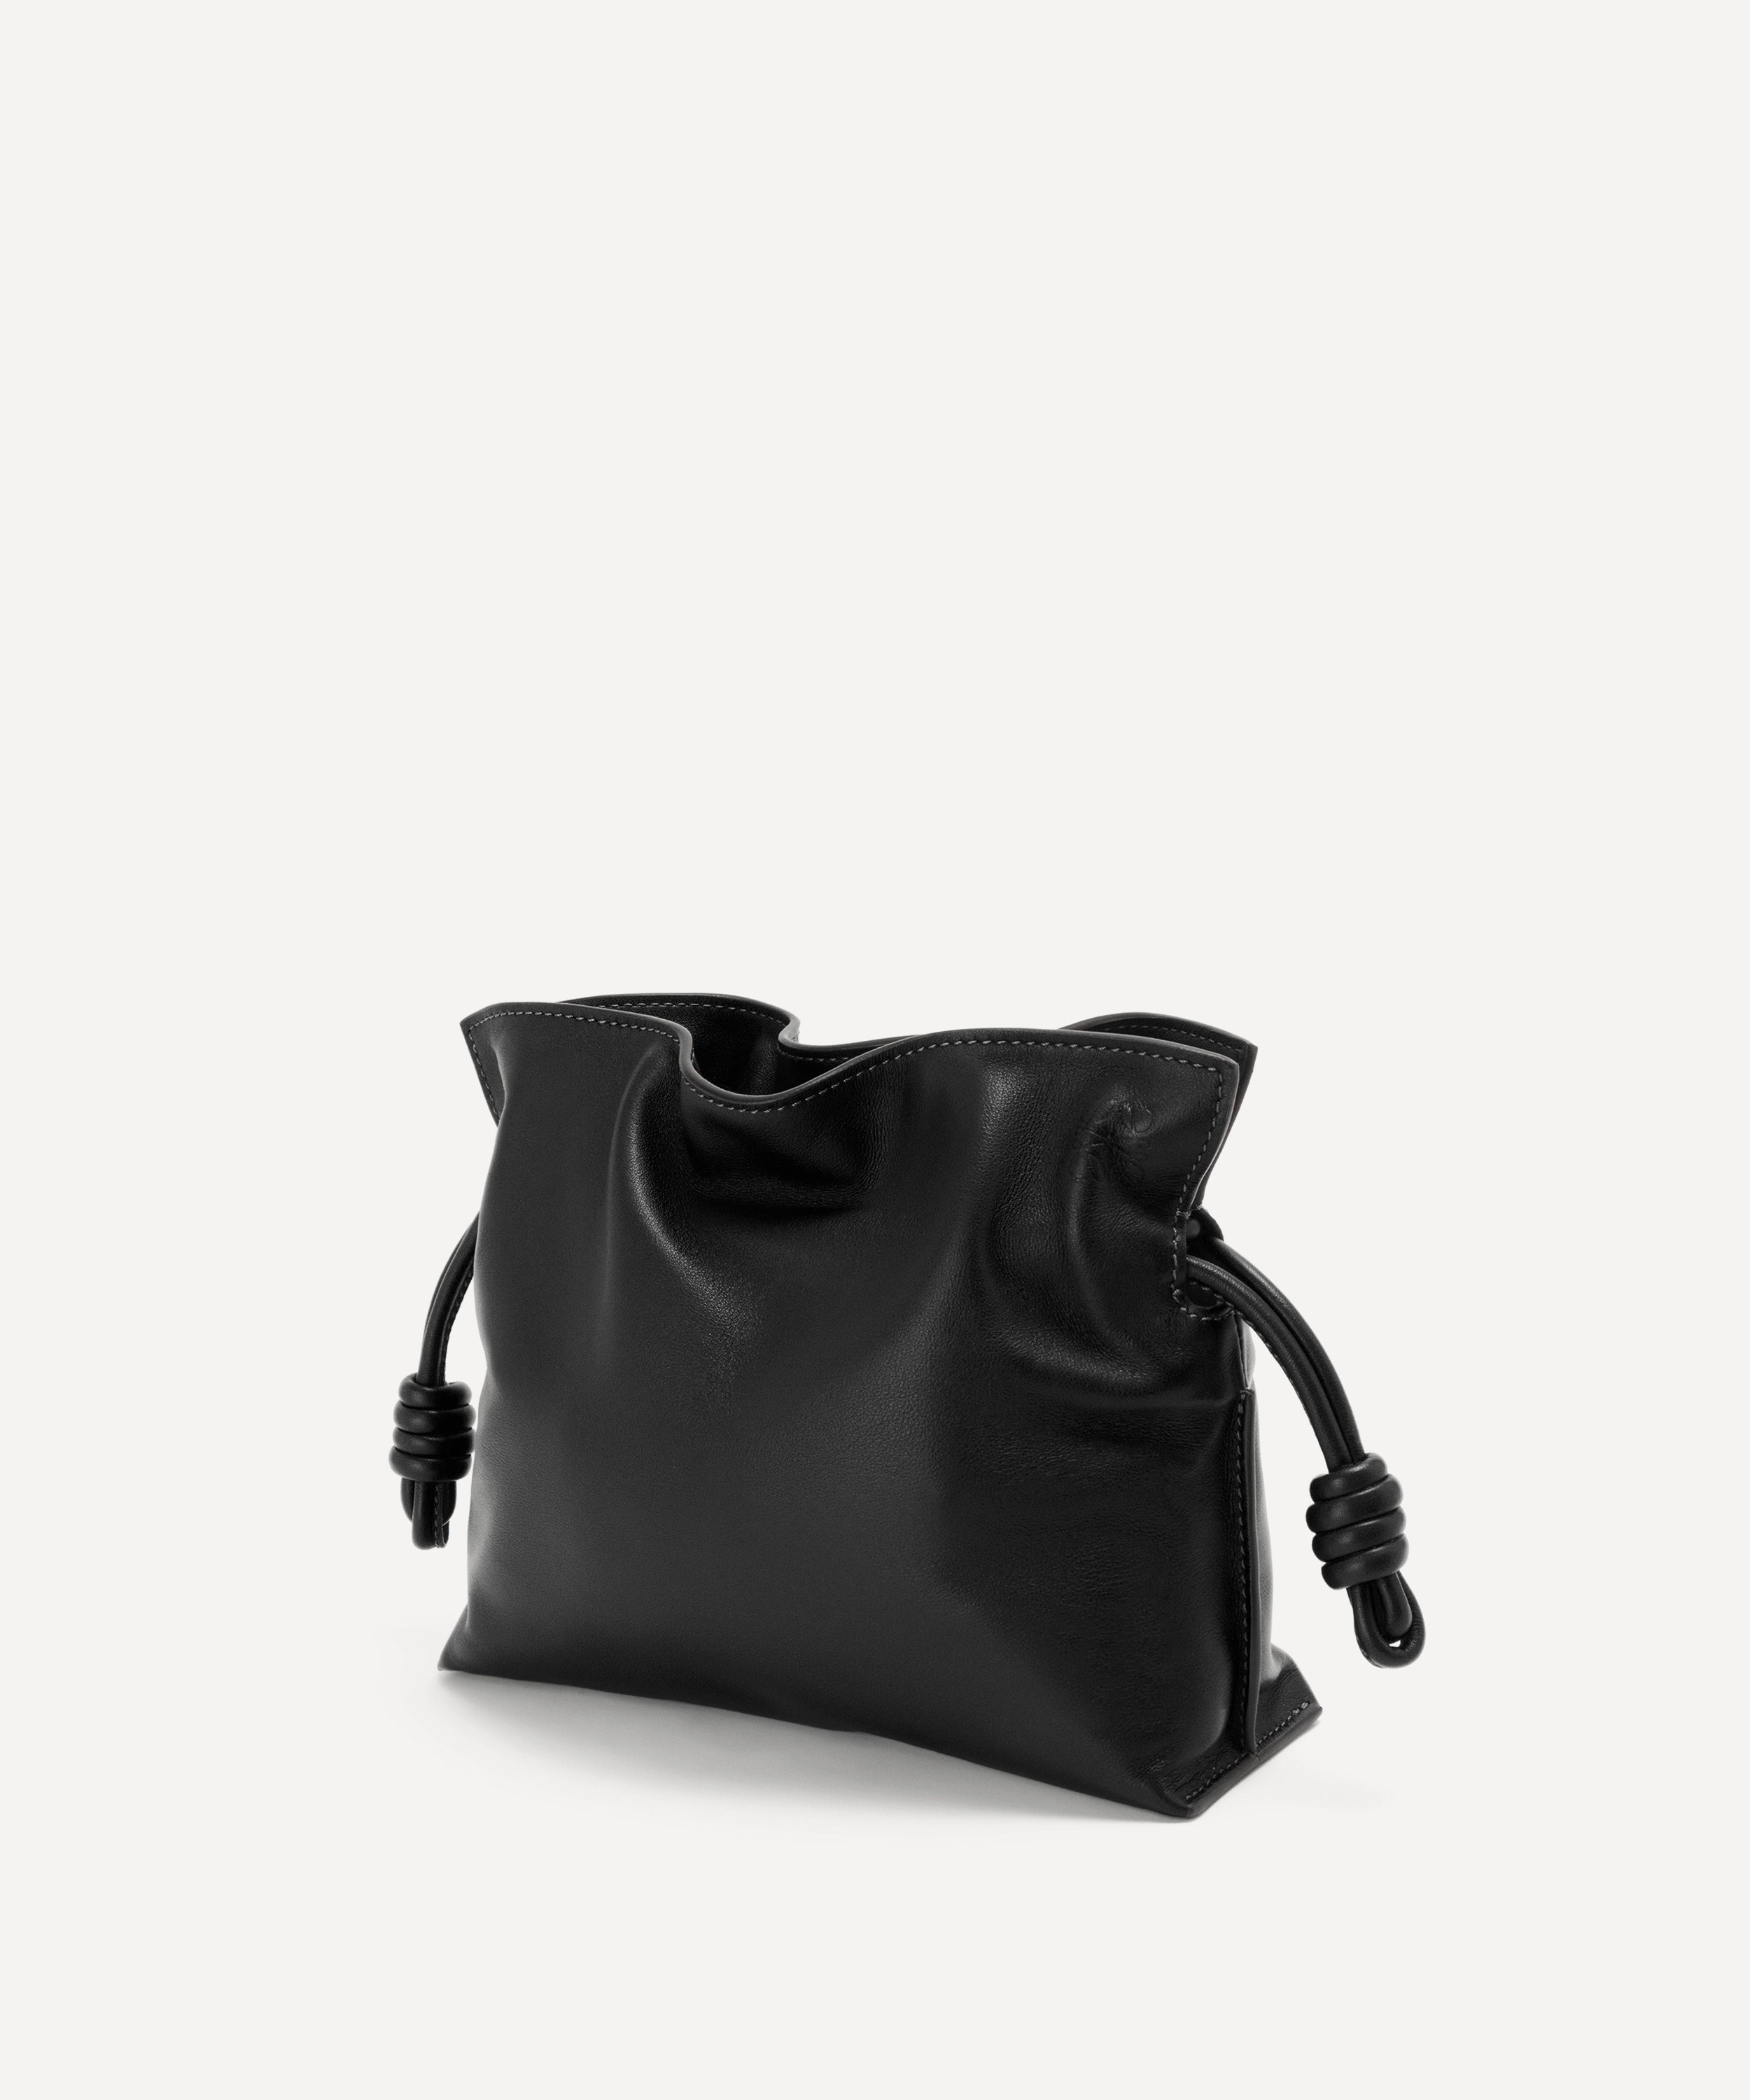 Loewe Mini Flamenco Leather Clutch Bag